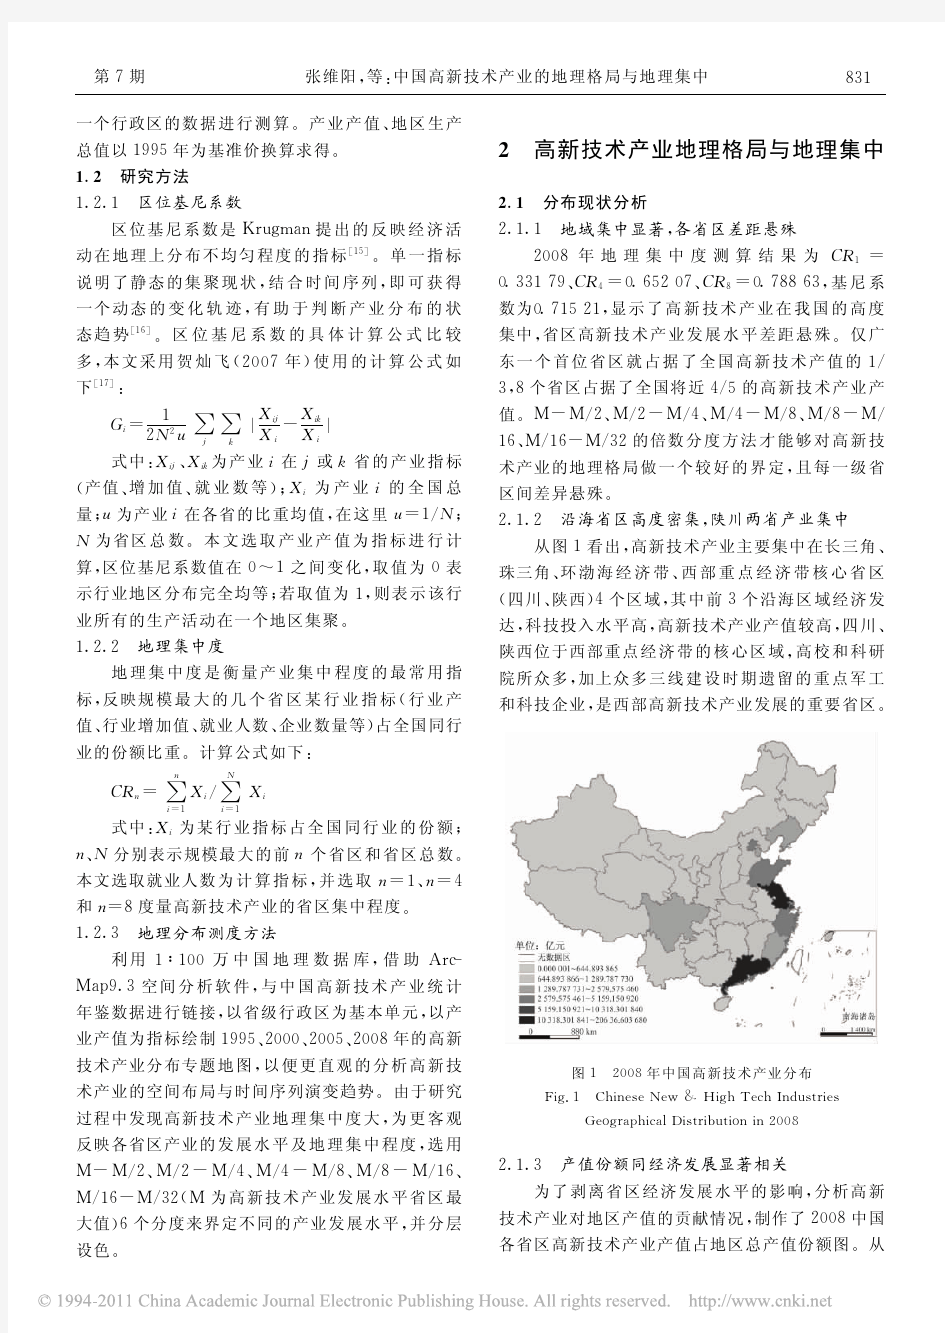 中国高新技术产业的地理格局与地理集中_张维阳